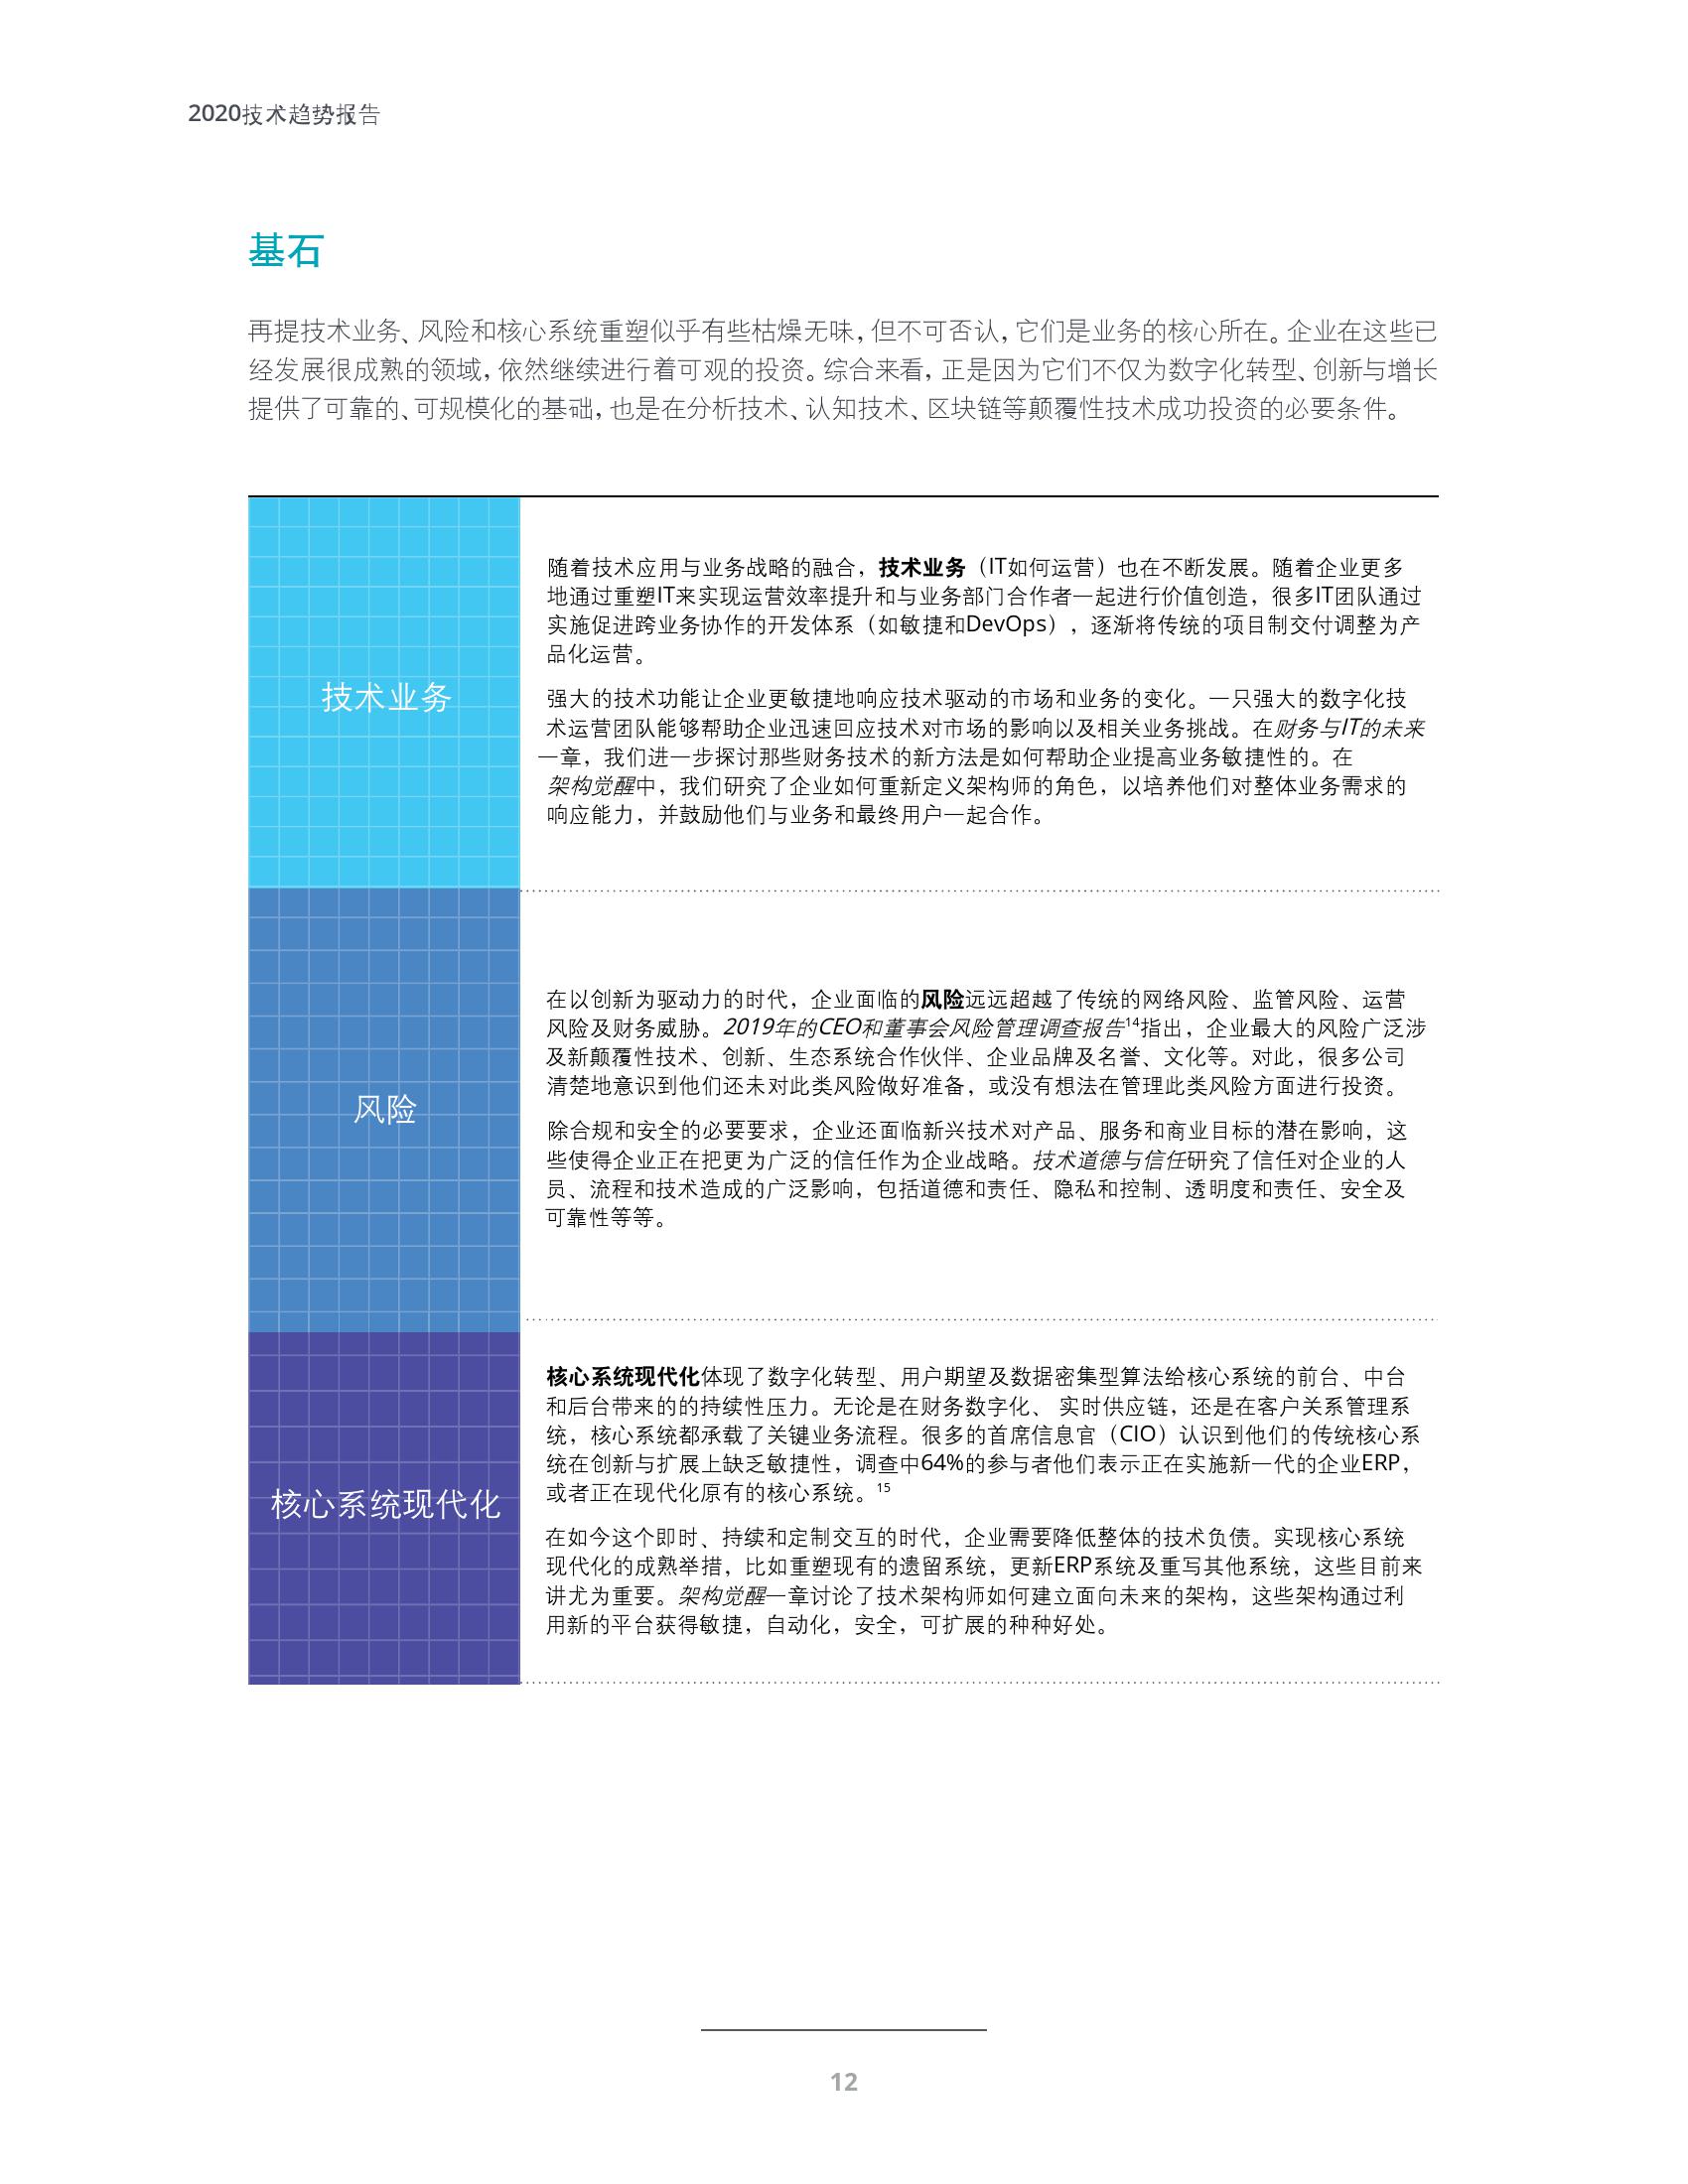 德勤咨询：2020技术趋势报告-中文版